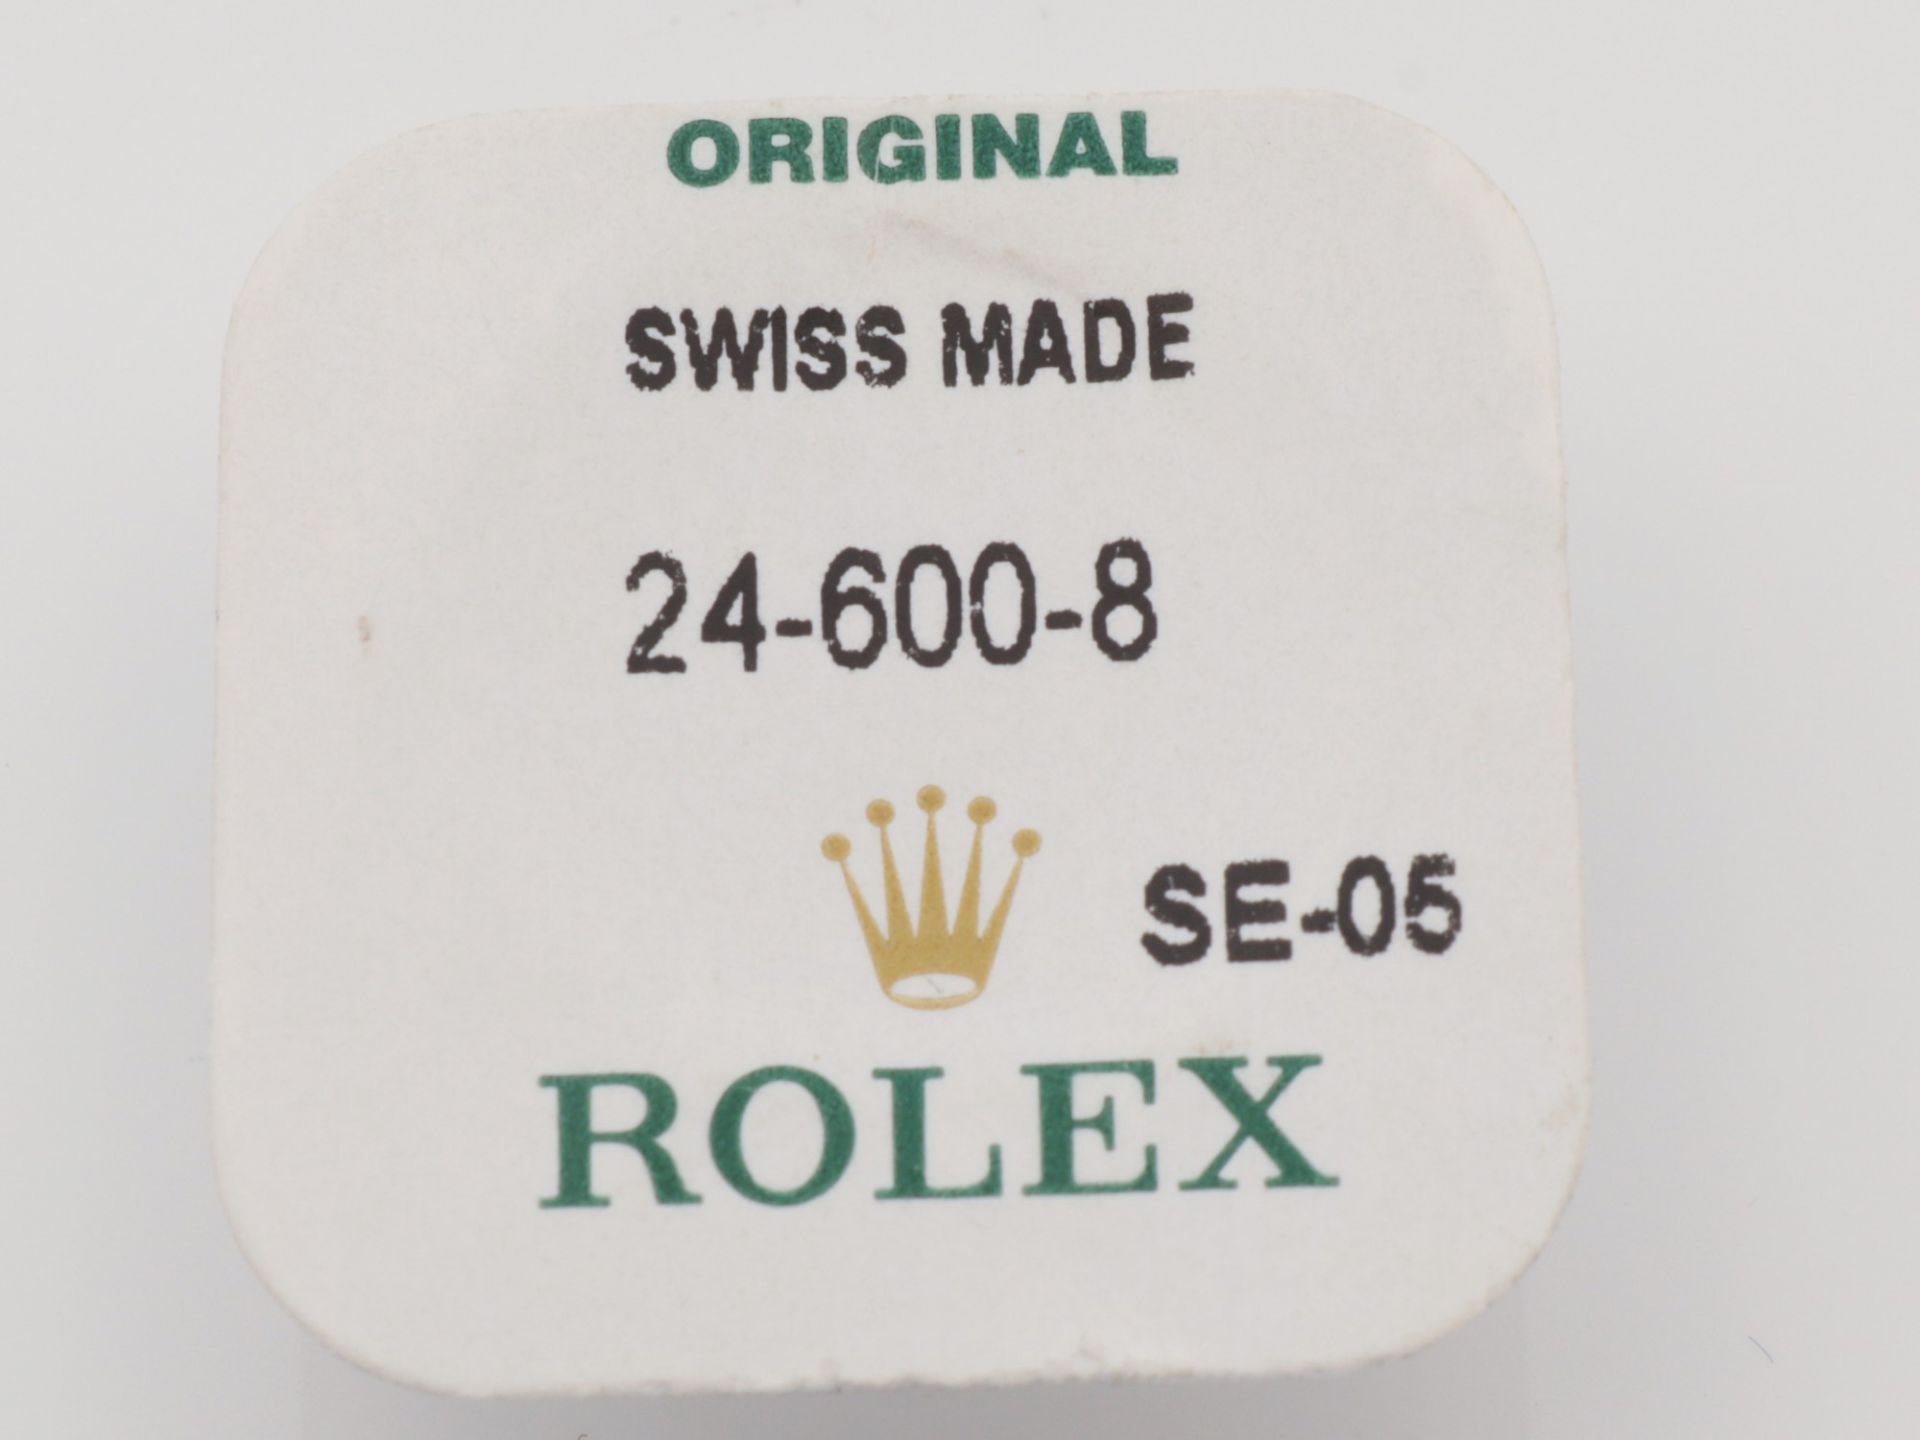 Rolex - Krone Schweiz, eingeschweißt, Verpackung gem. "Original Swiss Made 24-600-8 SE-05 Rolex" - Bild 3 aus 3